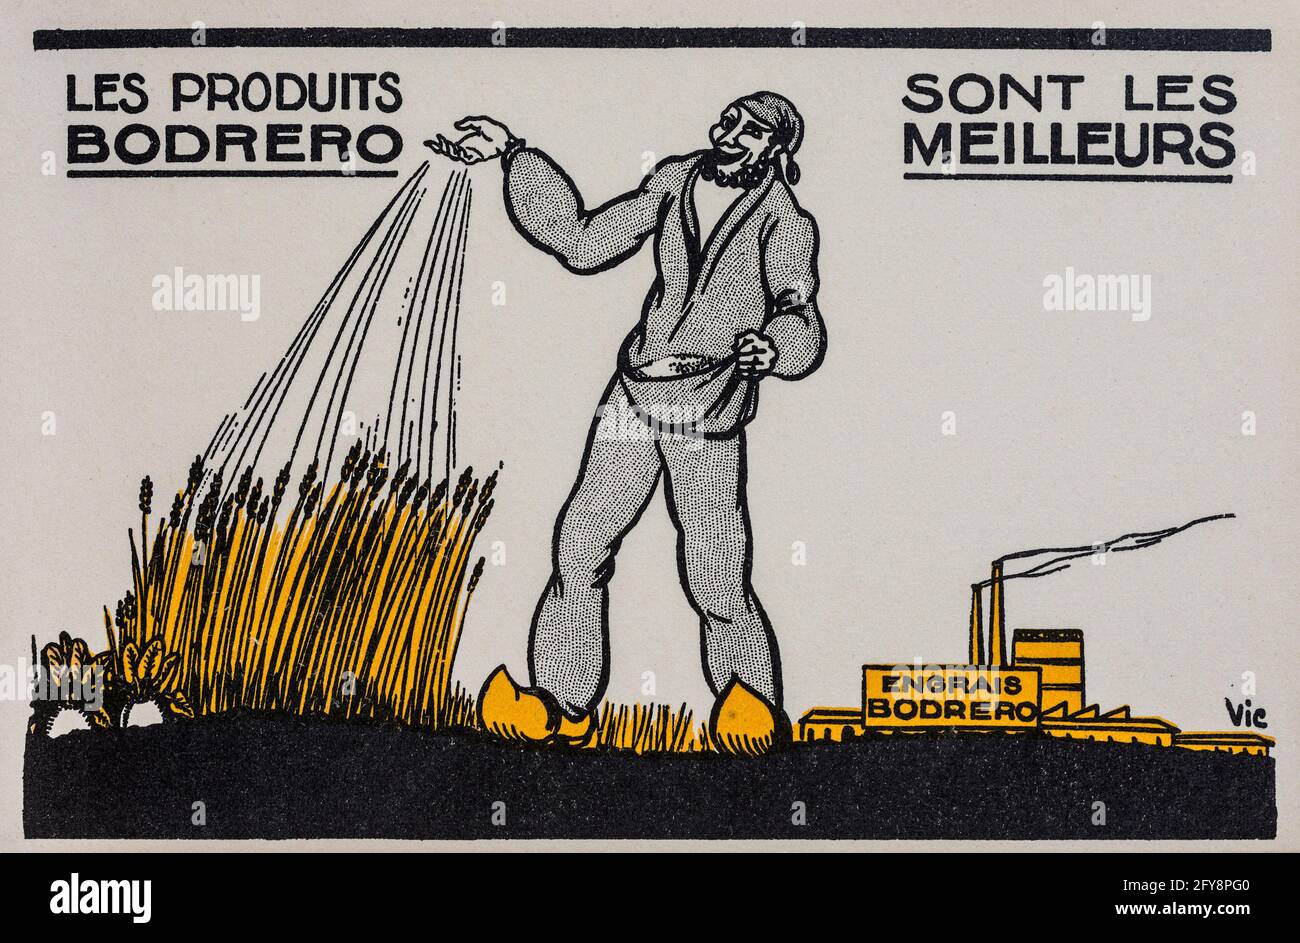 Cartolina pubblicitaria francese pubblicità ammoniaca e fertilizzanti azotati prodotti dalla C.F.A. (Comptoir Francoise de l'Azote) per l'agricoltura. Foto Stock